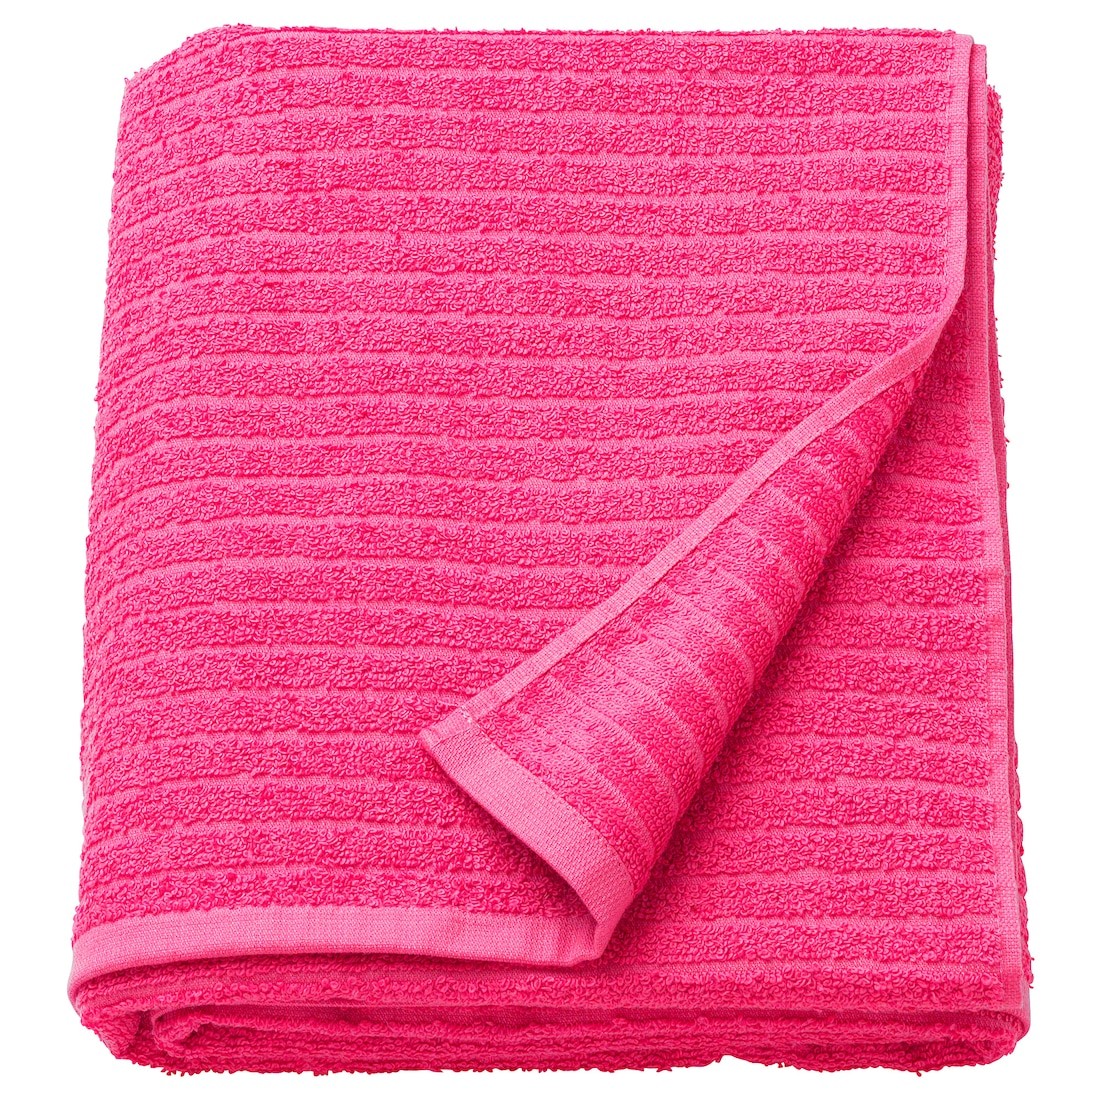 VÅGSJÖN Банное полотенце, розовый, 100x150 см